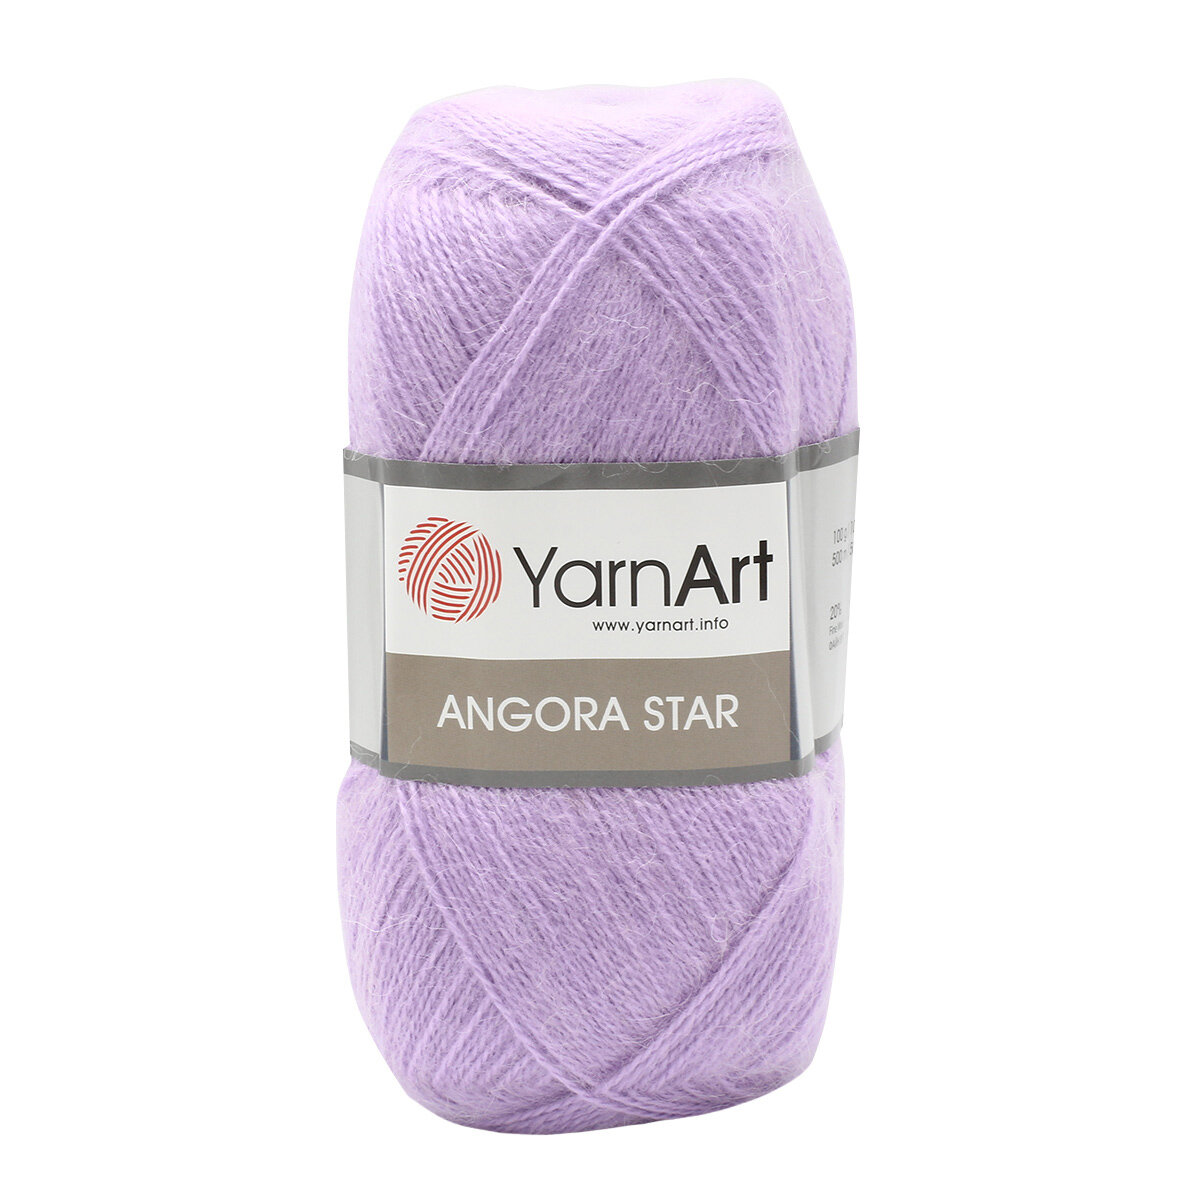 Пряжа для вязания YarnArt 'Angora Star' 100гр 500м (20% тонкая шерсть, 80% акрил) (9560 нежно-сиреневый), 5 мотков